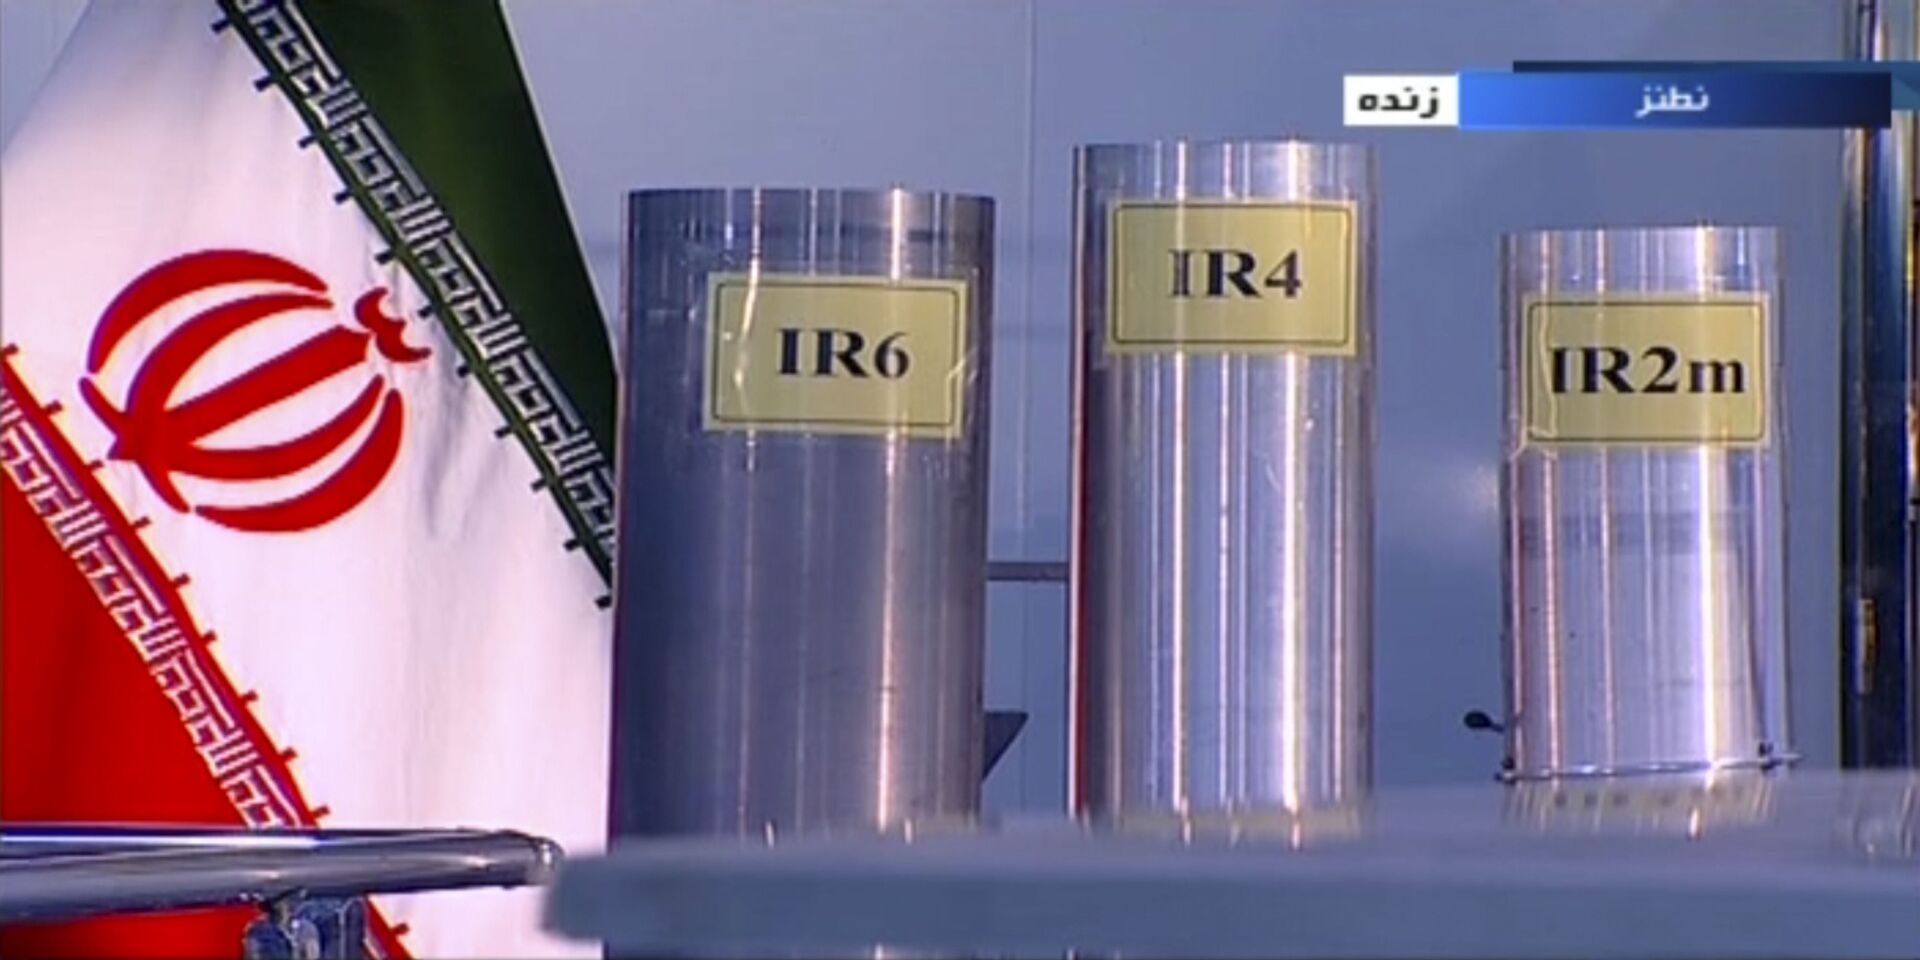 Irã aprofunda quebra de acordo nuclear ao instalar novas centrífugas mais eficientes, diz mídia - Sputnik Brasil, 1920, 03.02.2021